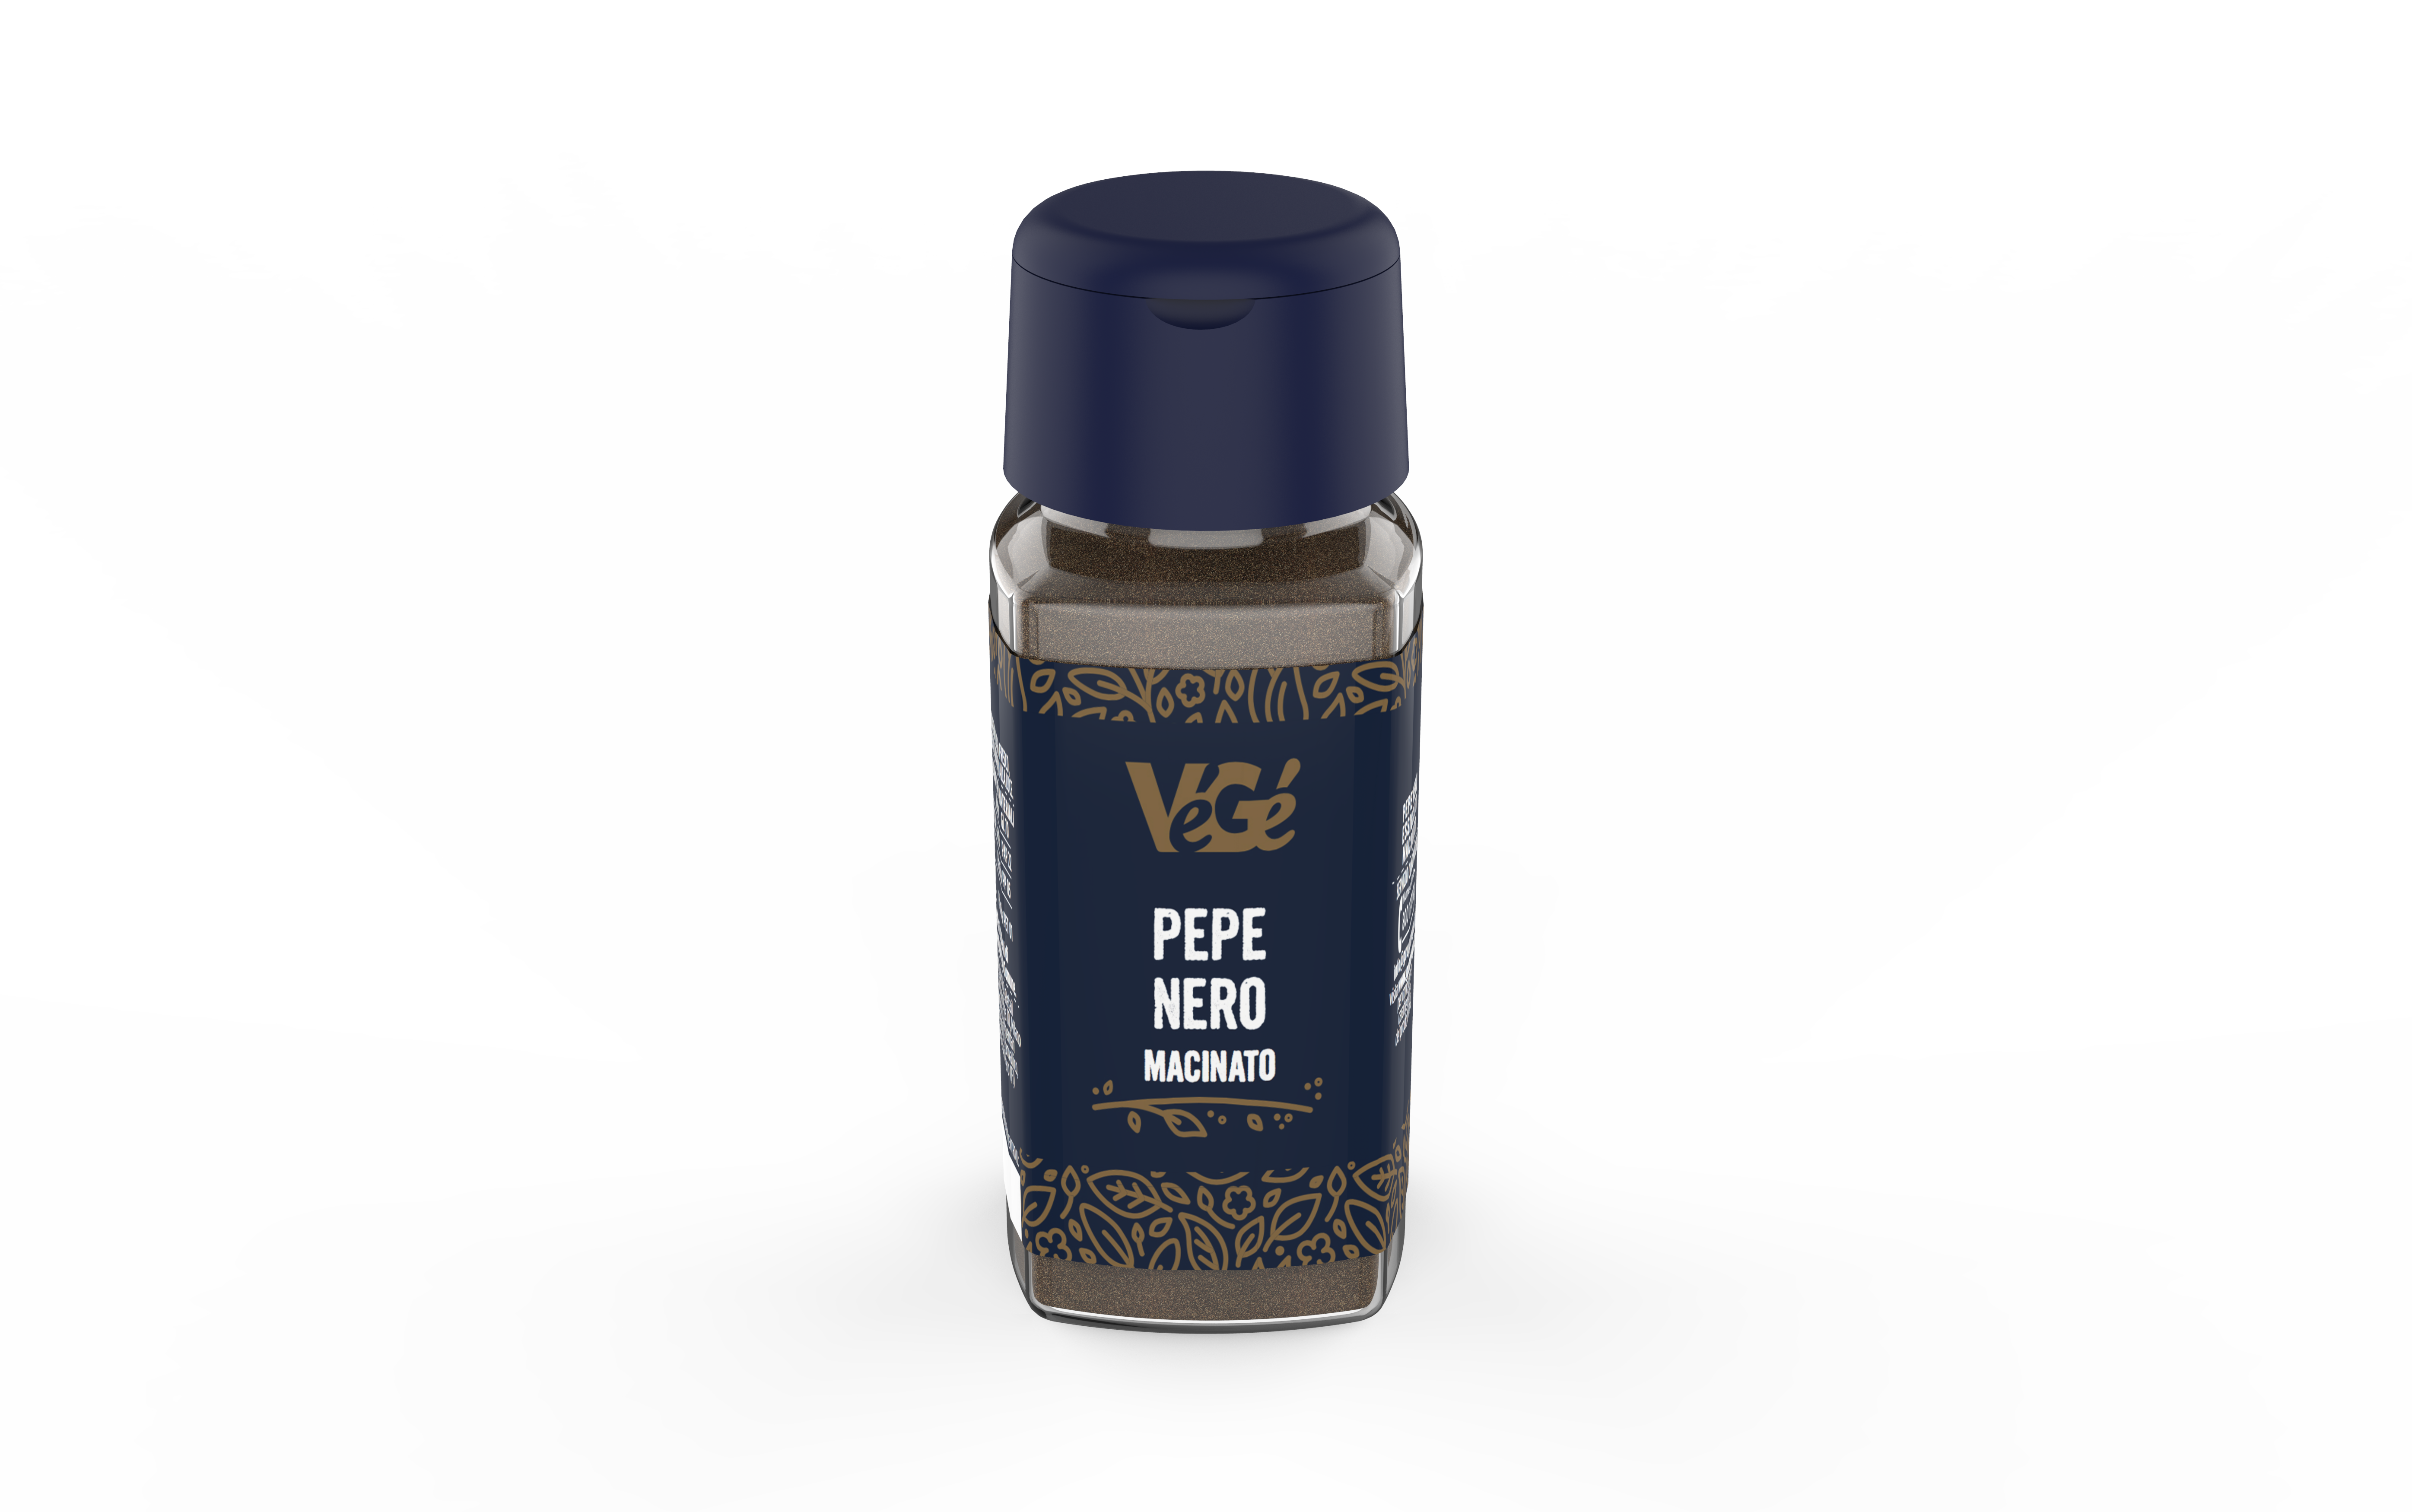 Pepe nero macinato Vegé GDO (Grande Distribuzione Organizzata)